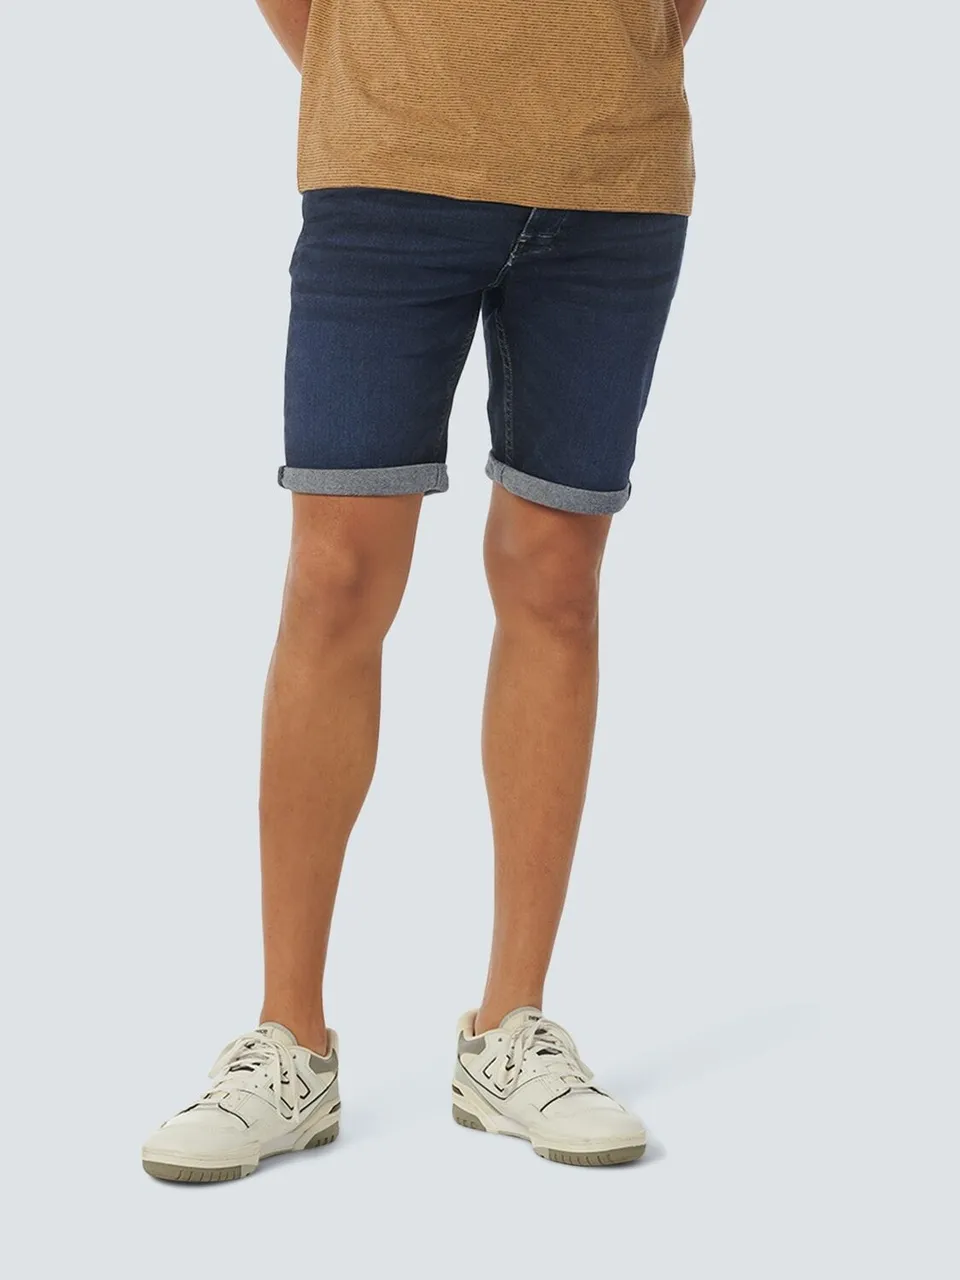 Shorts NO EXCESS Gr. 40, N-Gr, blau (rinse denim) Herren Hosen Shorts mit verstecktem Phone-Pocket